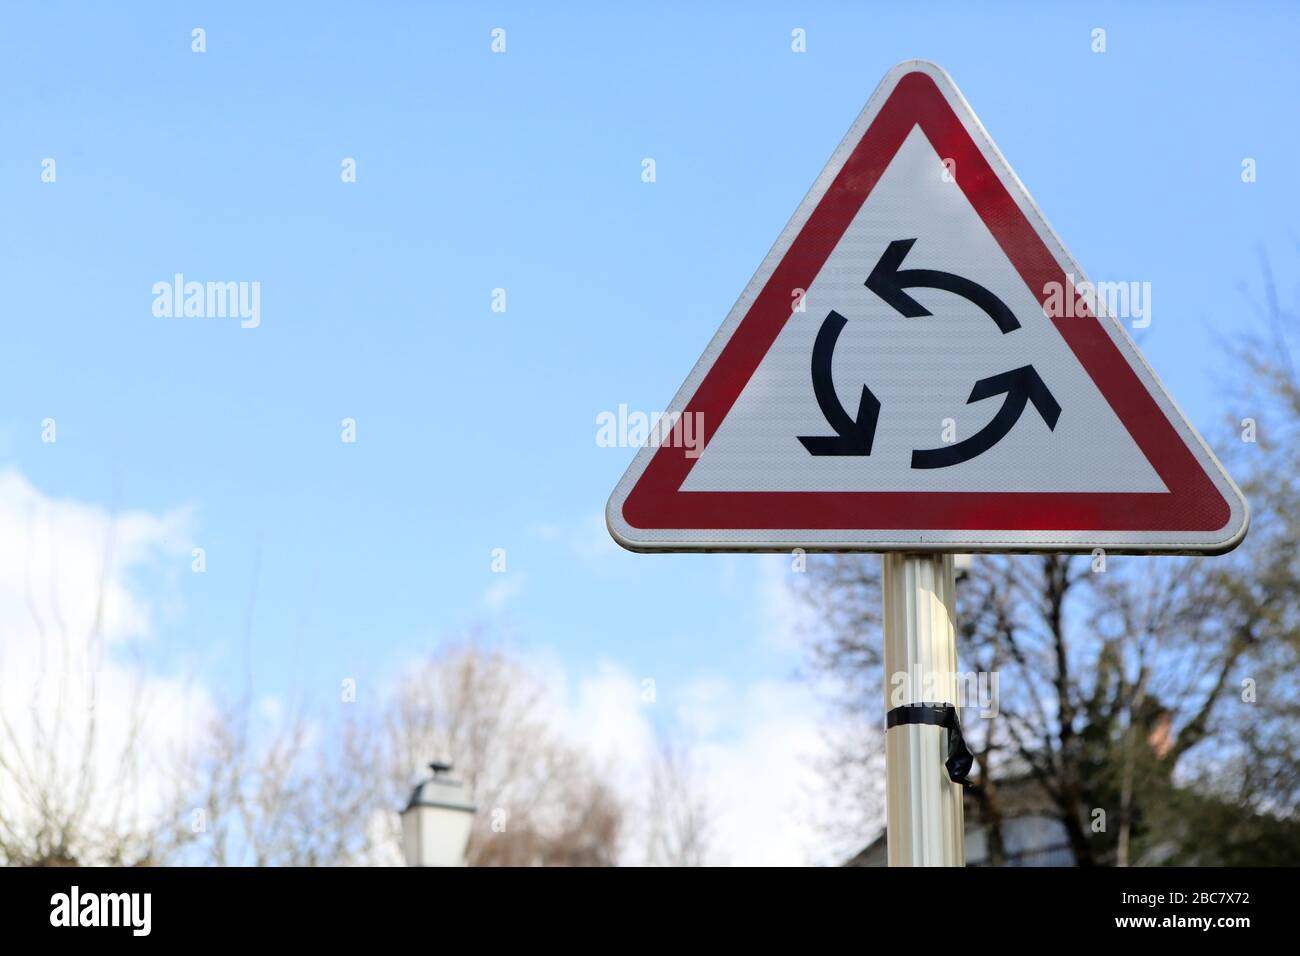 Rond-point. Sens giratoire. Panneau de signalisation routière. Saint-Gervais-les-Bains. Haute-Savoie. France. Stock Photo